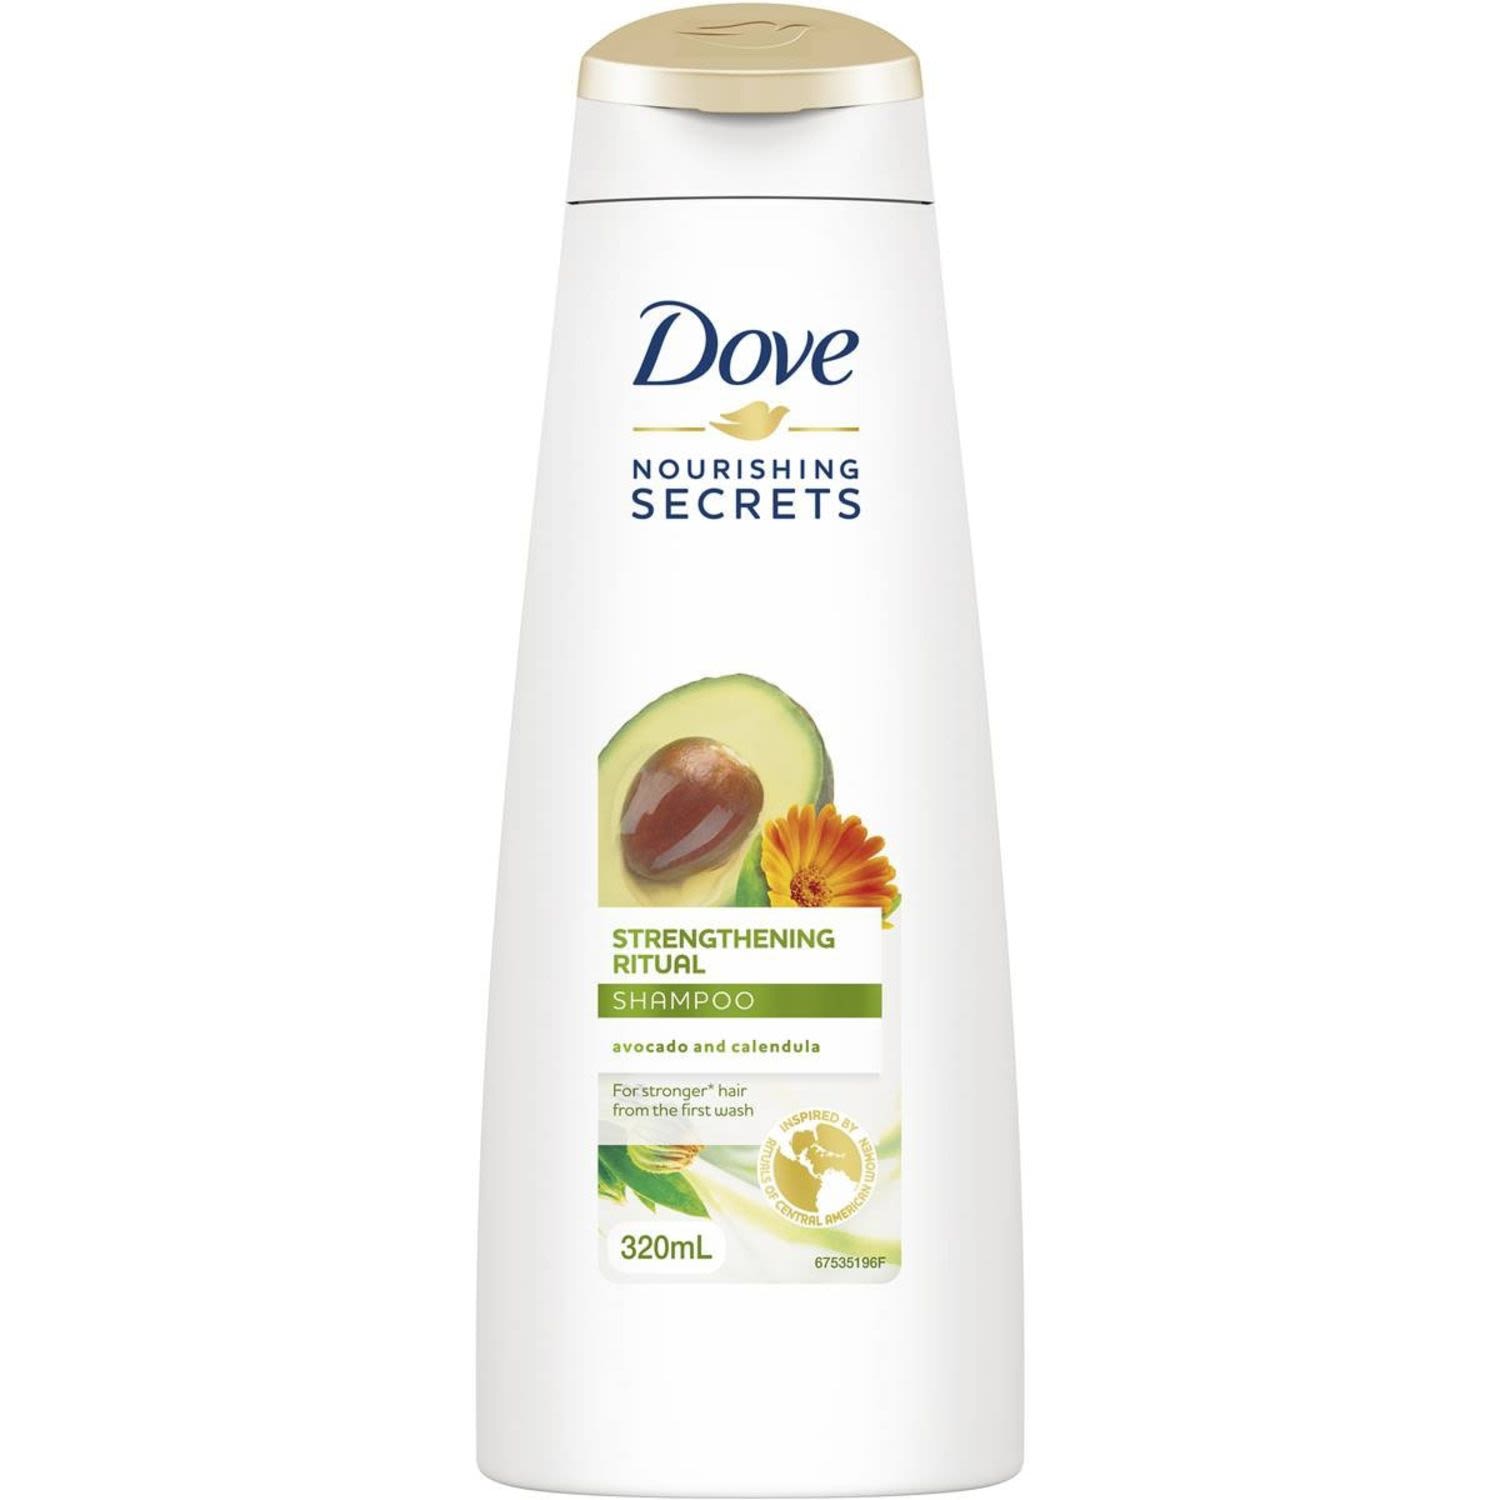 Dove Nourishing Secrets Shampoo Strengthening Ritual, 320 Millilitre